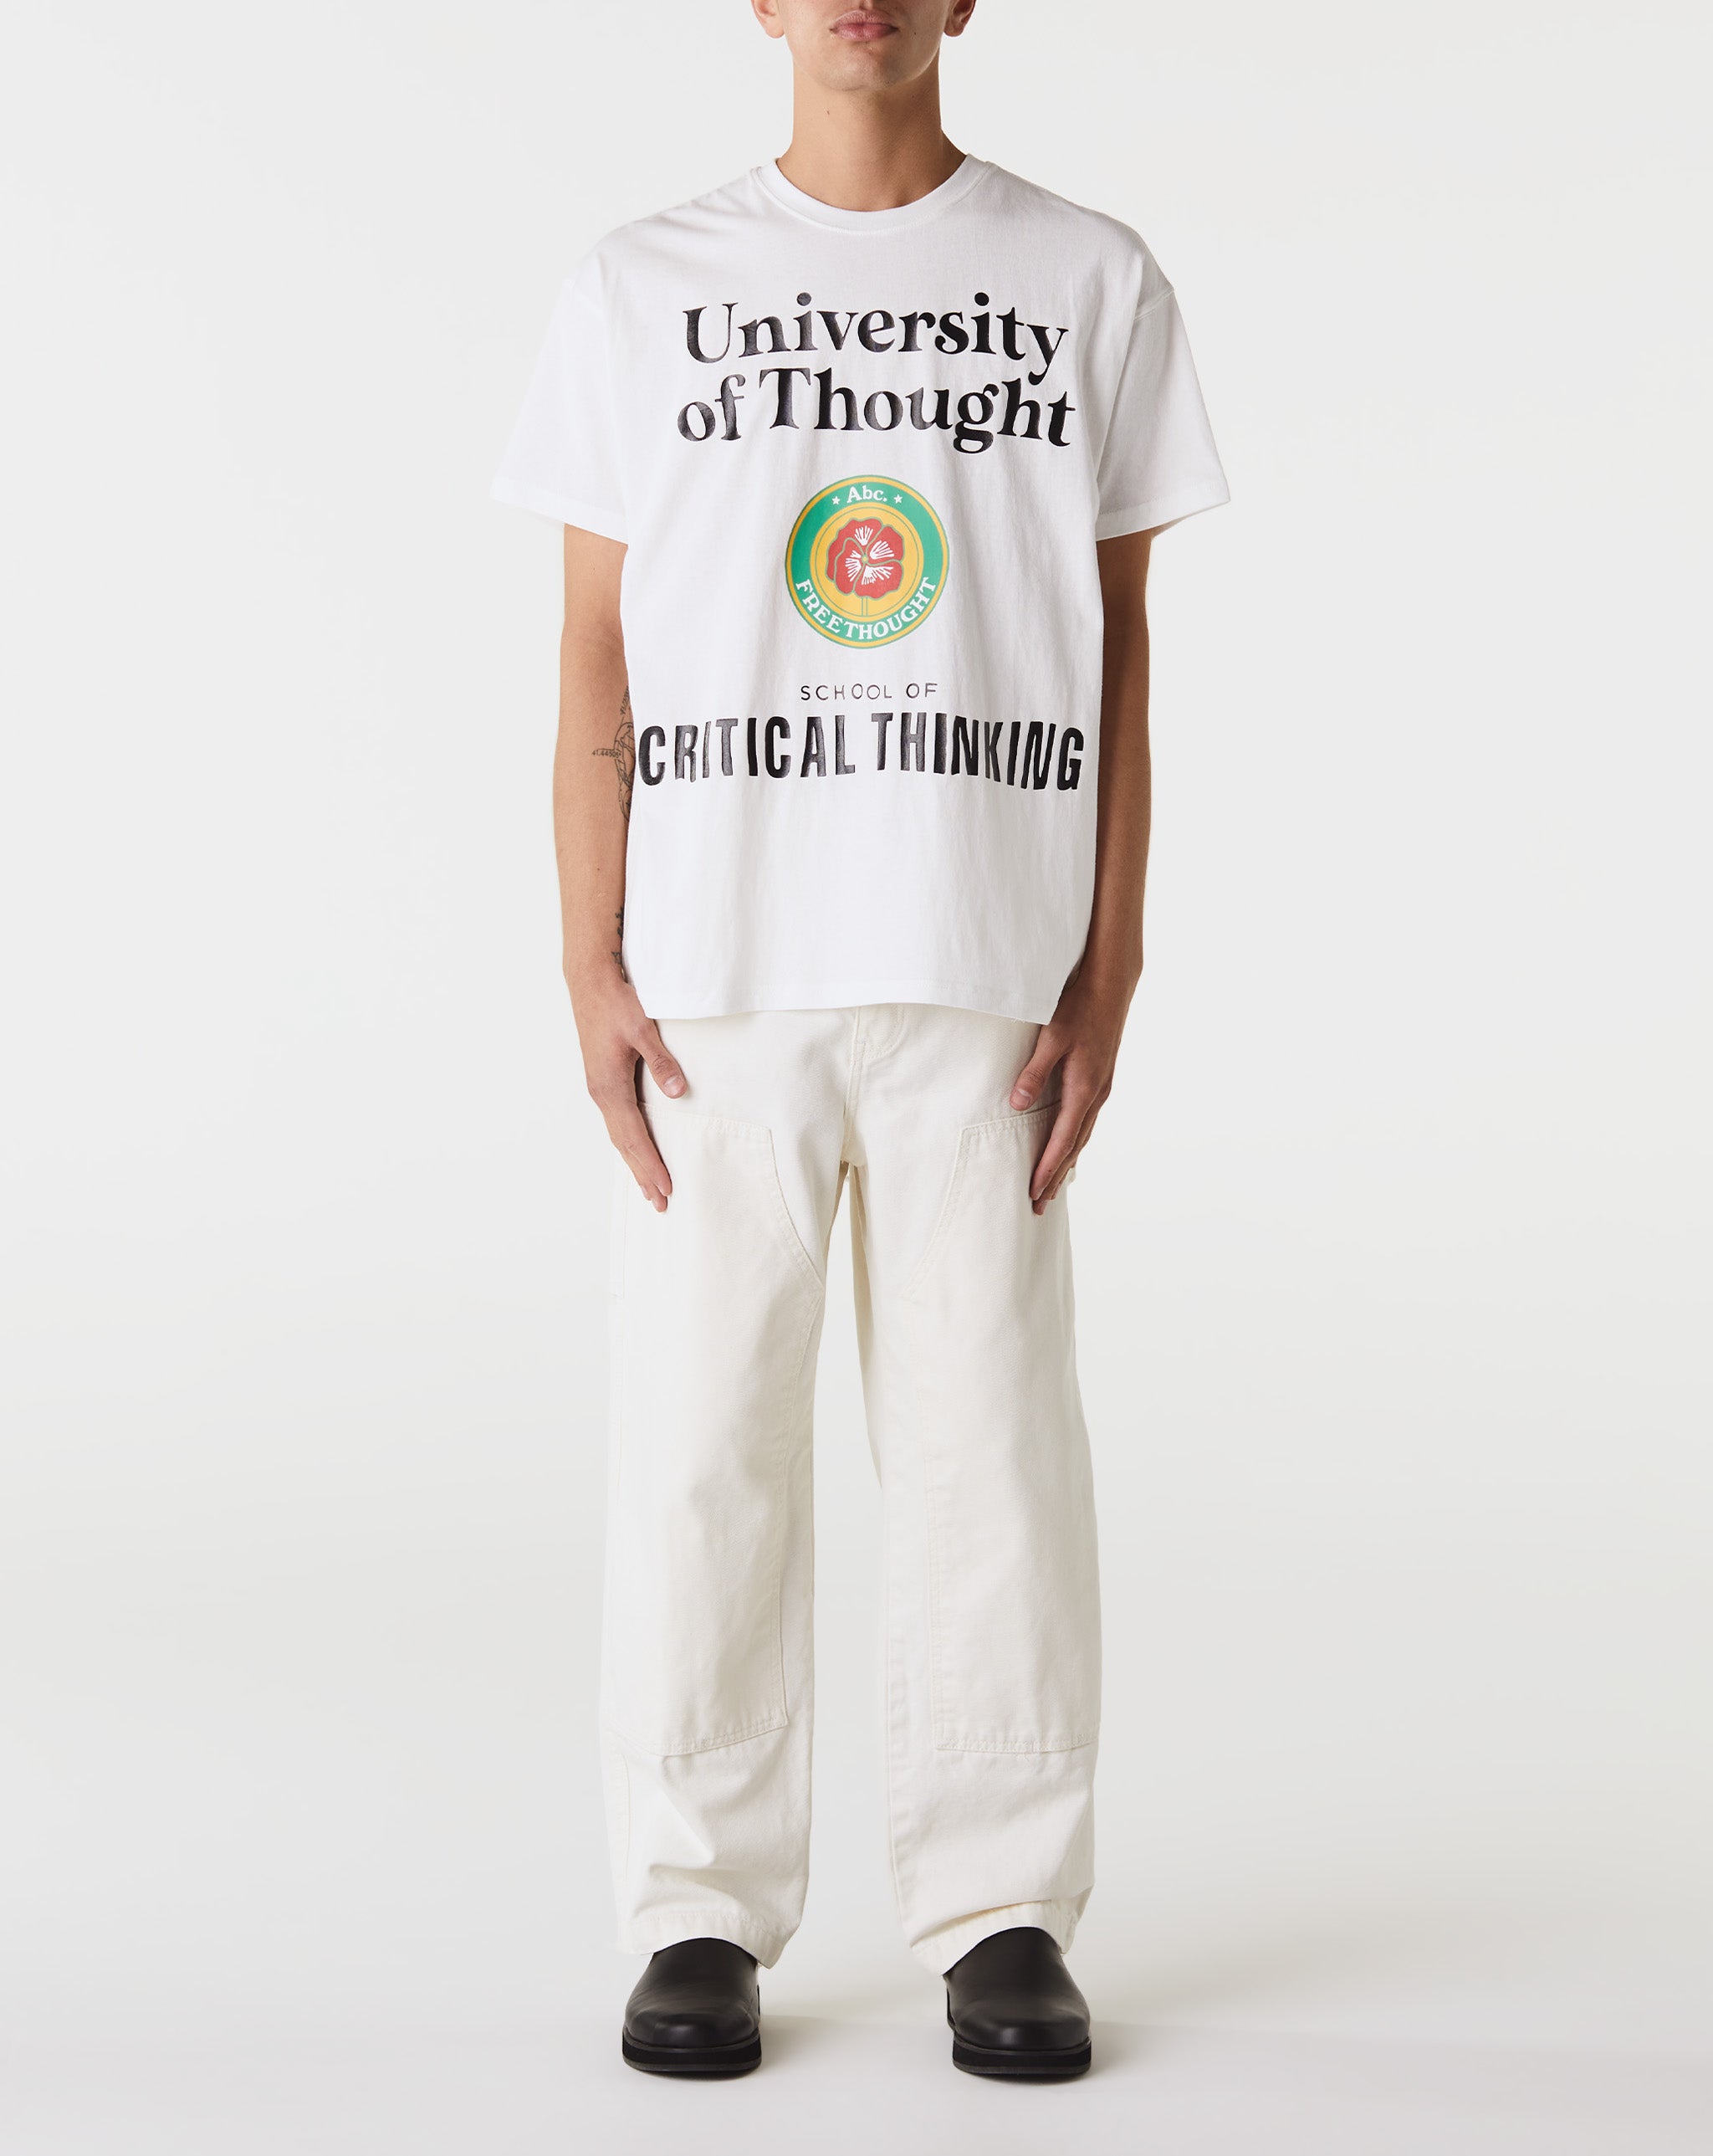 Herd Mentality T-Shirt University T-Shirt  - Cheap Erlebniswelt-fliegenfischen Jordan outlet